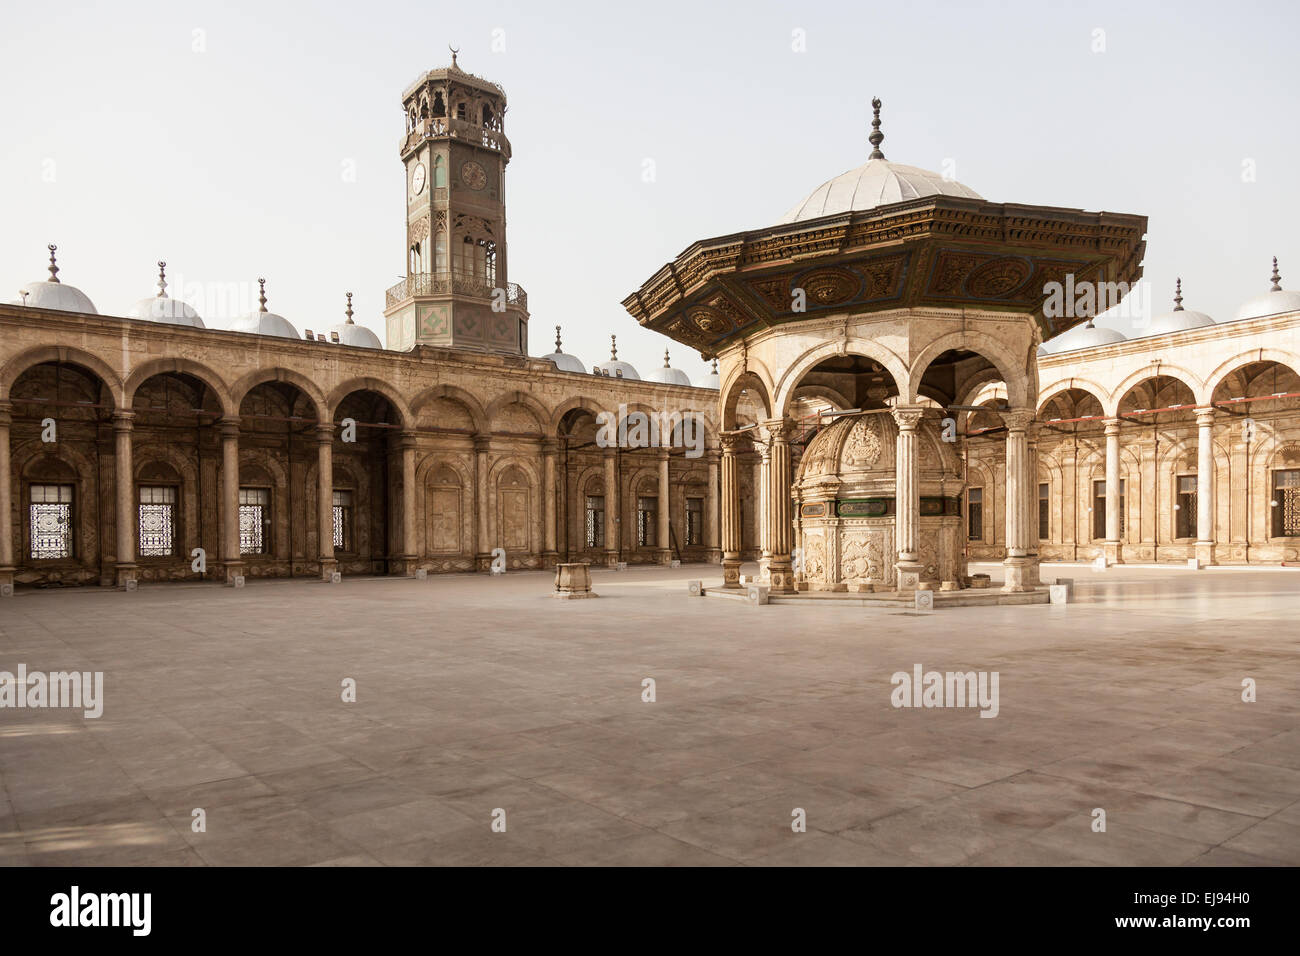 Alabaster Moschee Zitadelle Kairo Ägypten Stockfoto